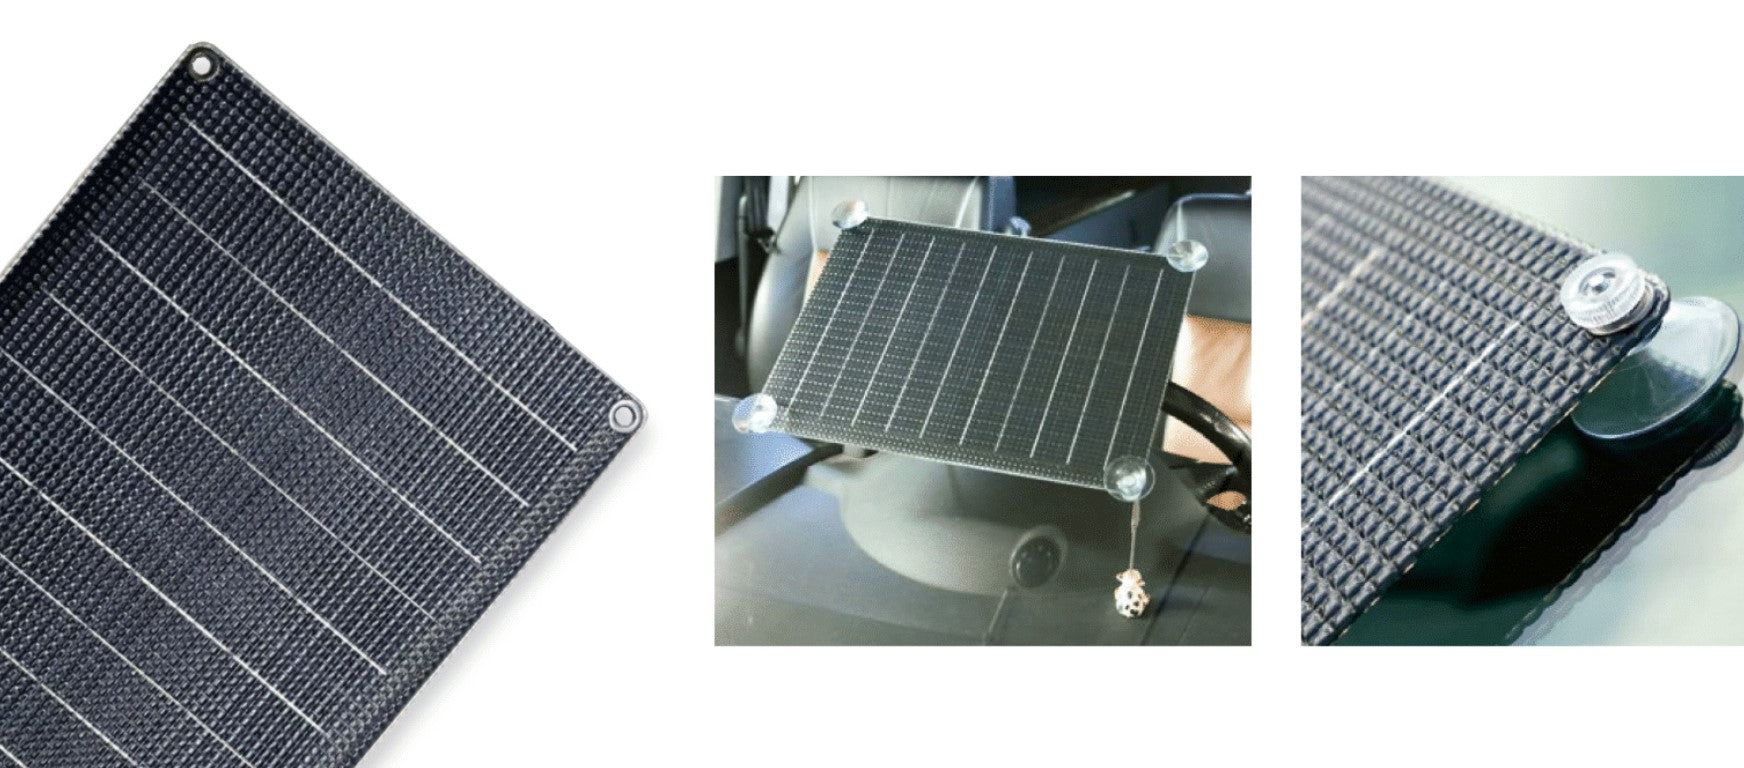 Pannello solare montato su un parabrezza in 3 immagini